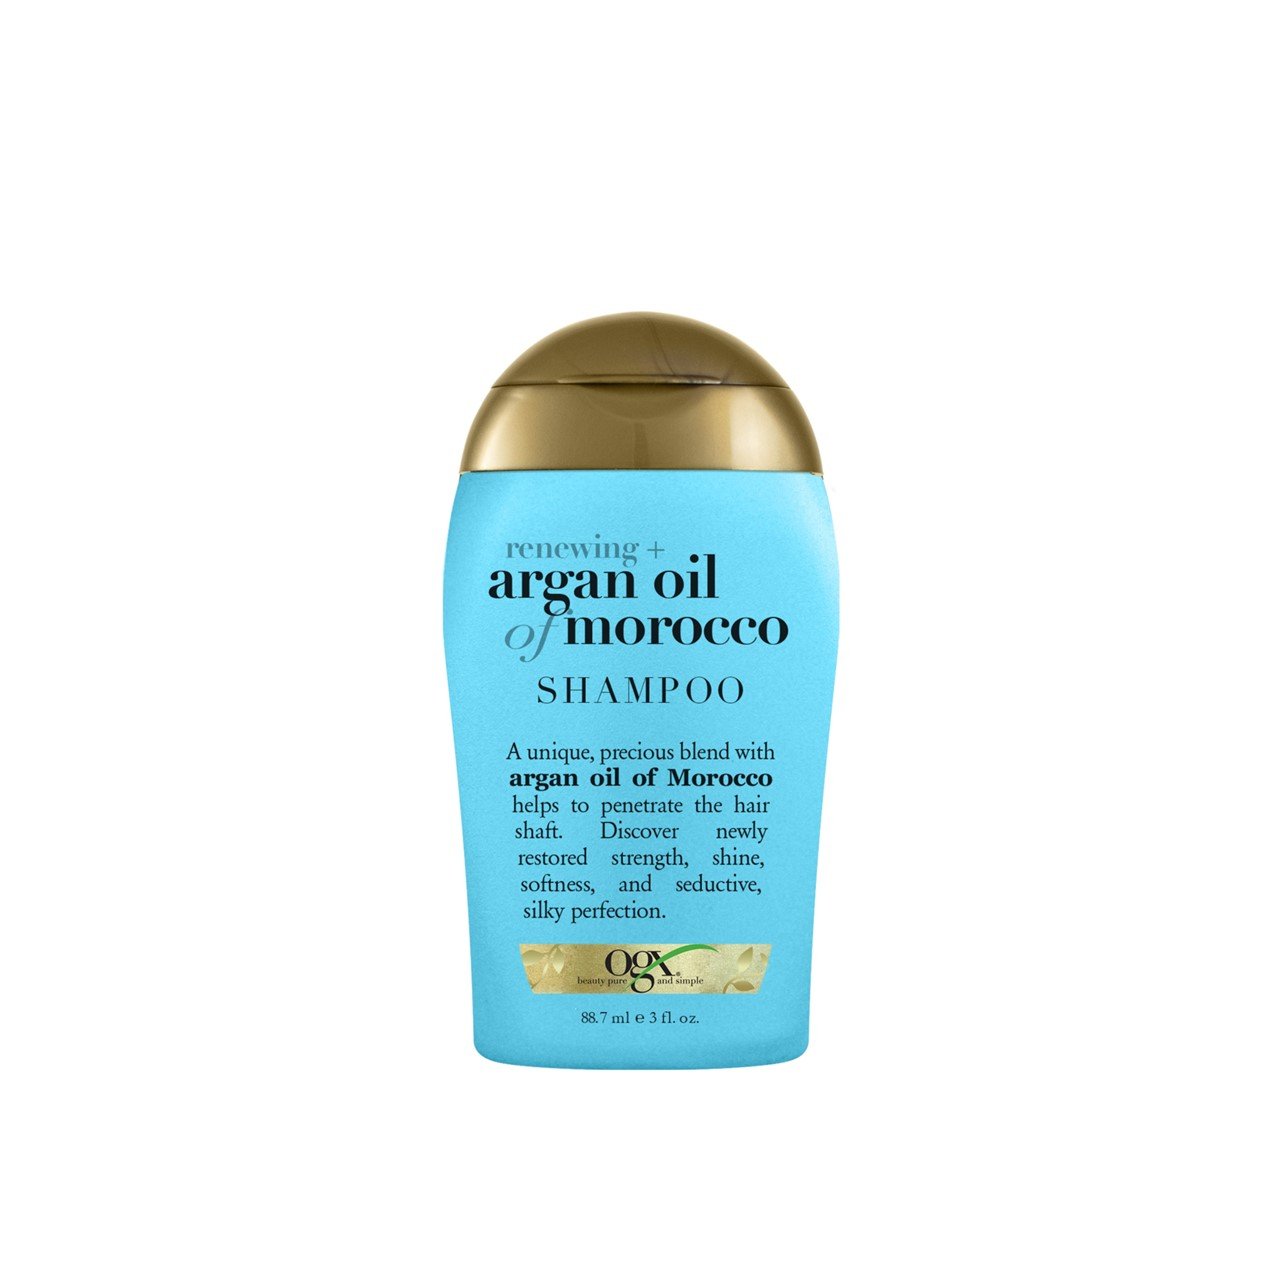 OGX Renewing + Argan Oil of Morocco Shampoo 88.7ml (3 fl oz)